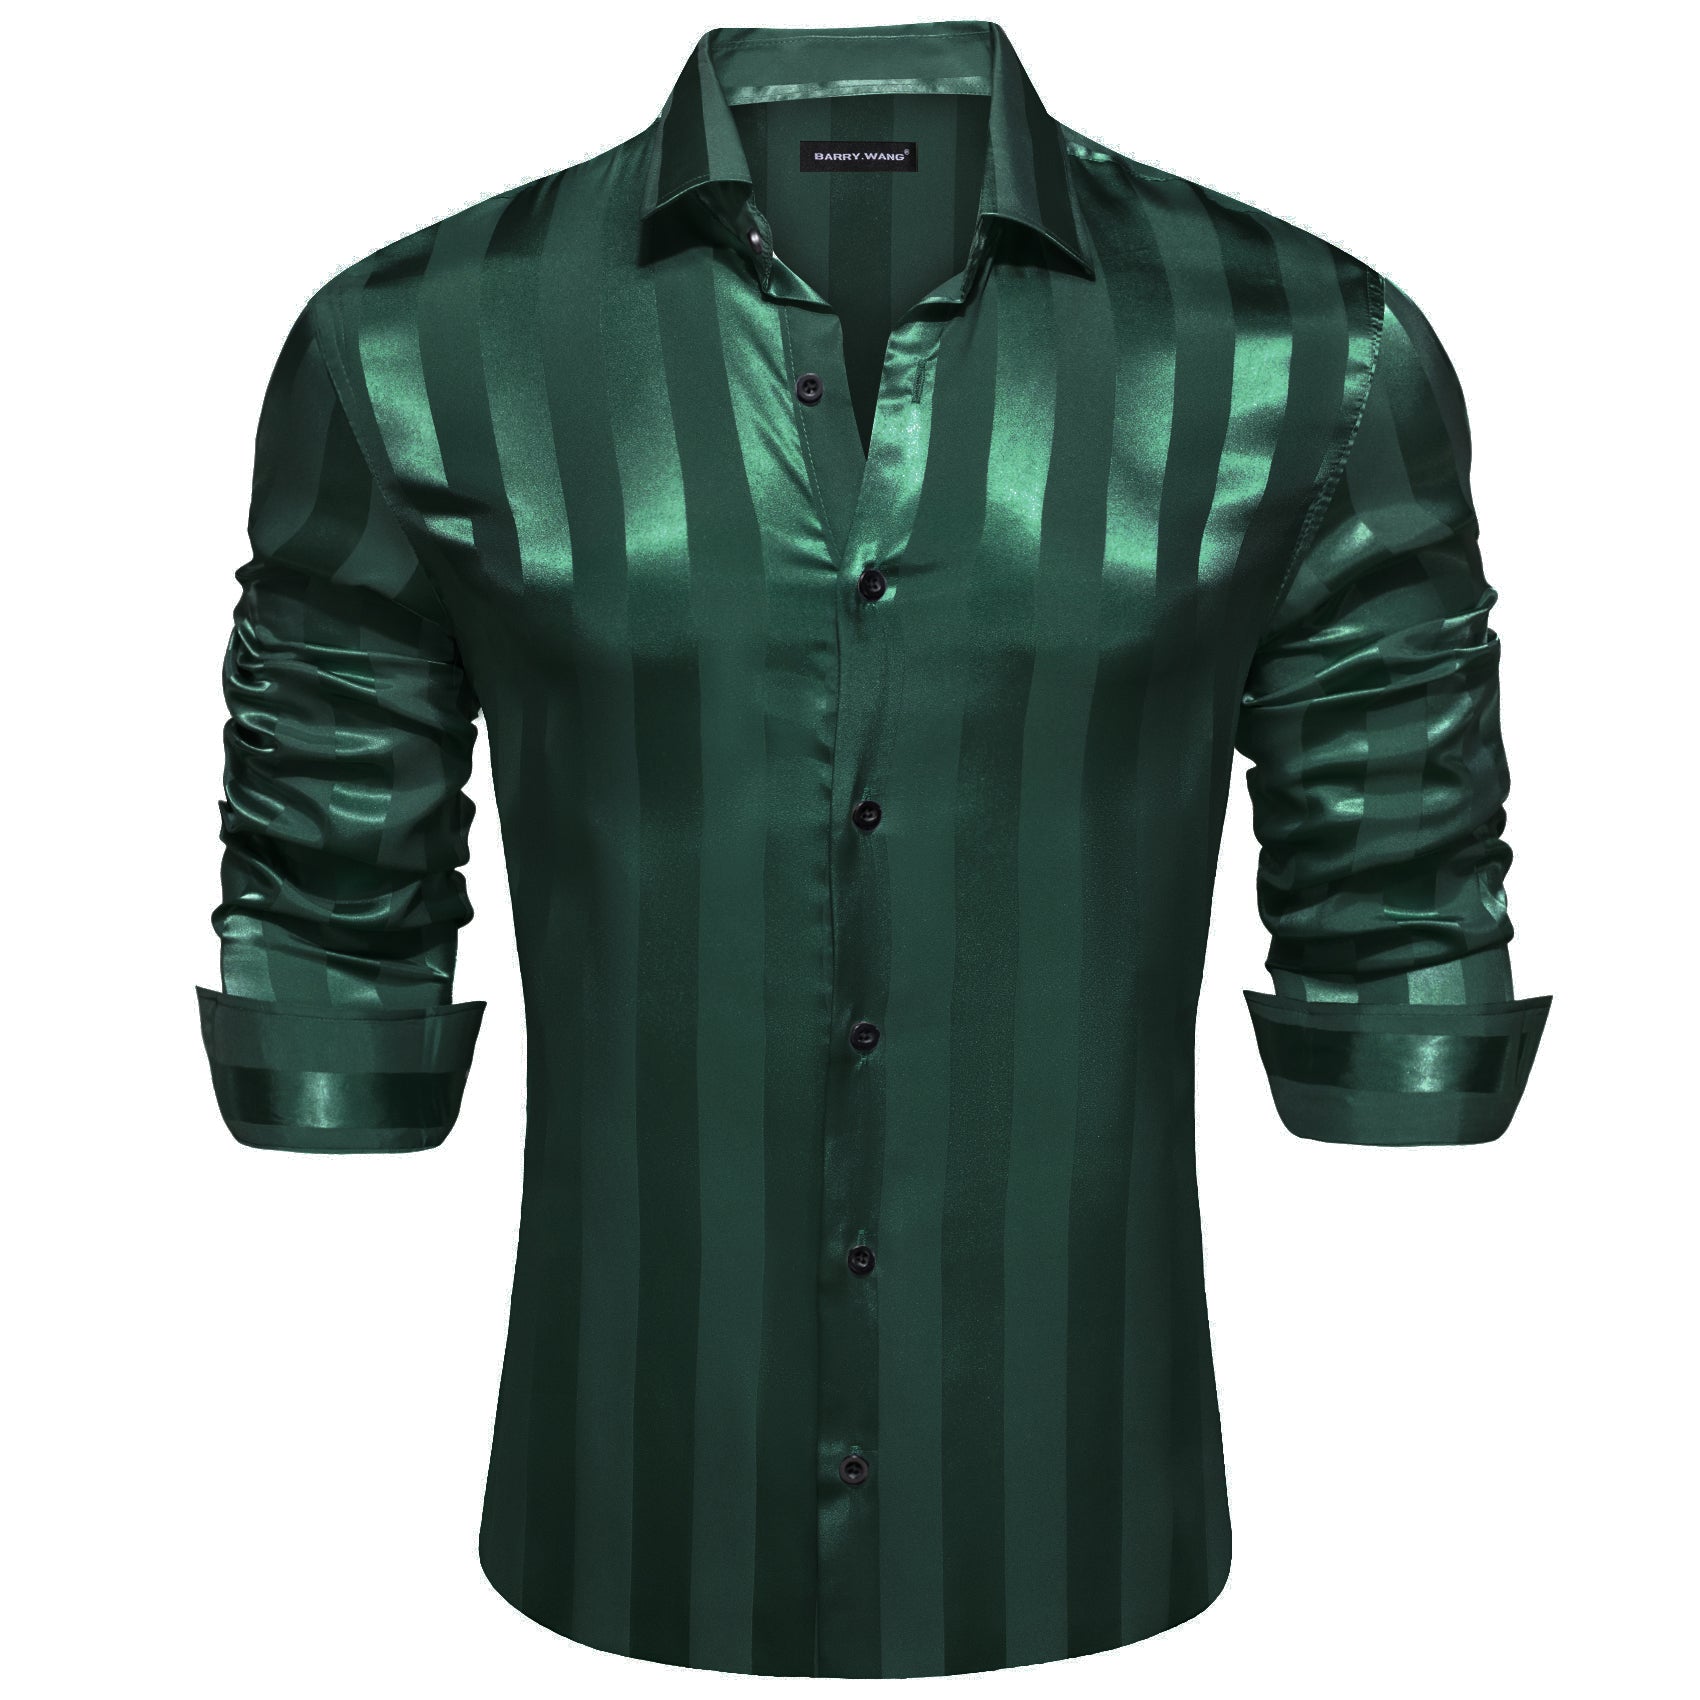 Barry.wang Fashion Green Striped Silk Men's Shirt